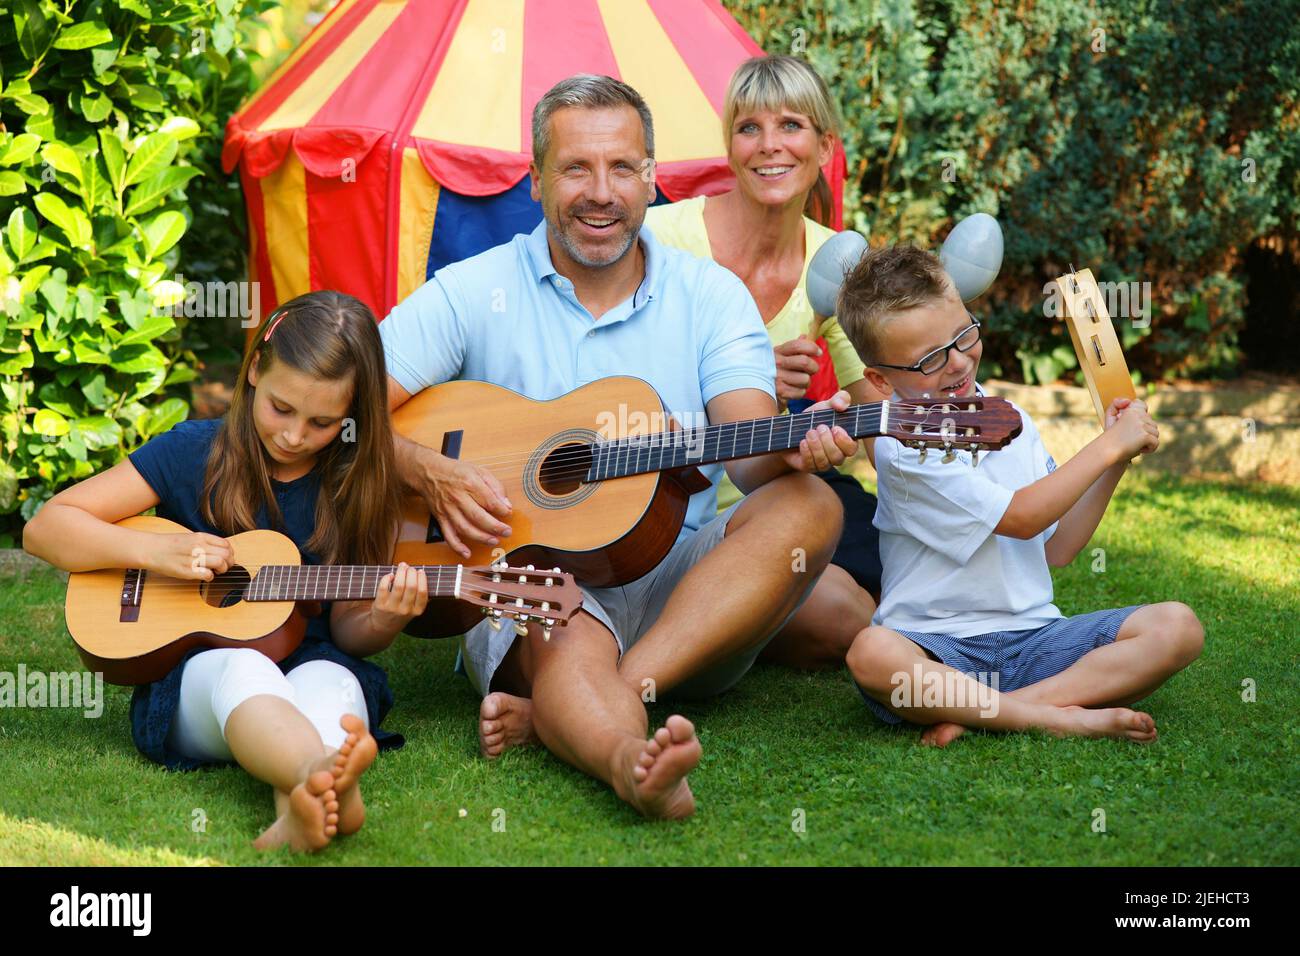 Eine glückliche Familie macht im Garten Musik, zeltet, Camping, Mann, Frau, Zwei Kinder, 4 Personen, Foto Stock